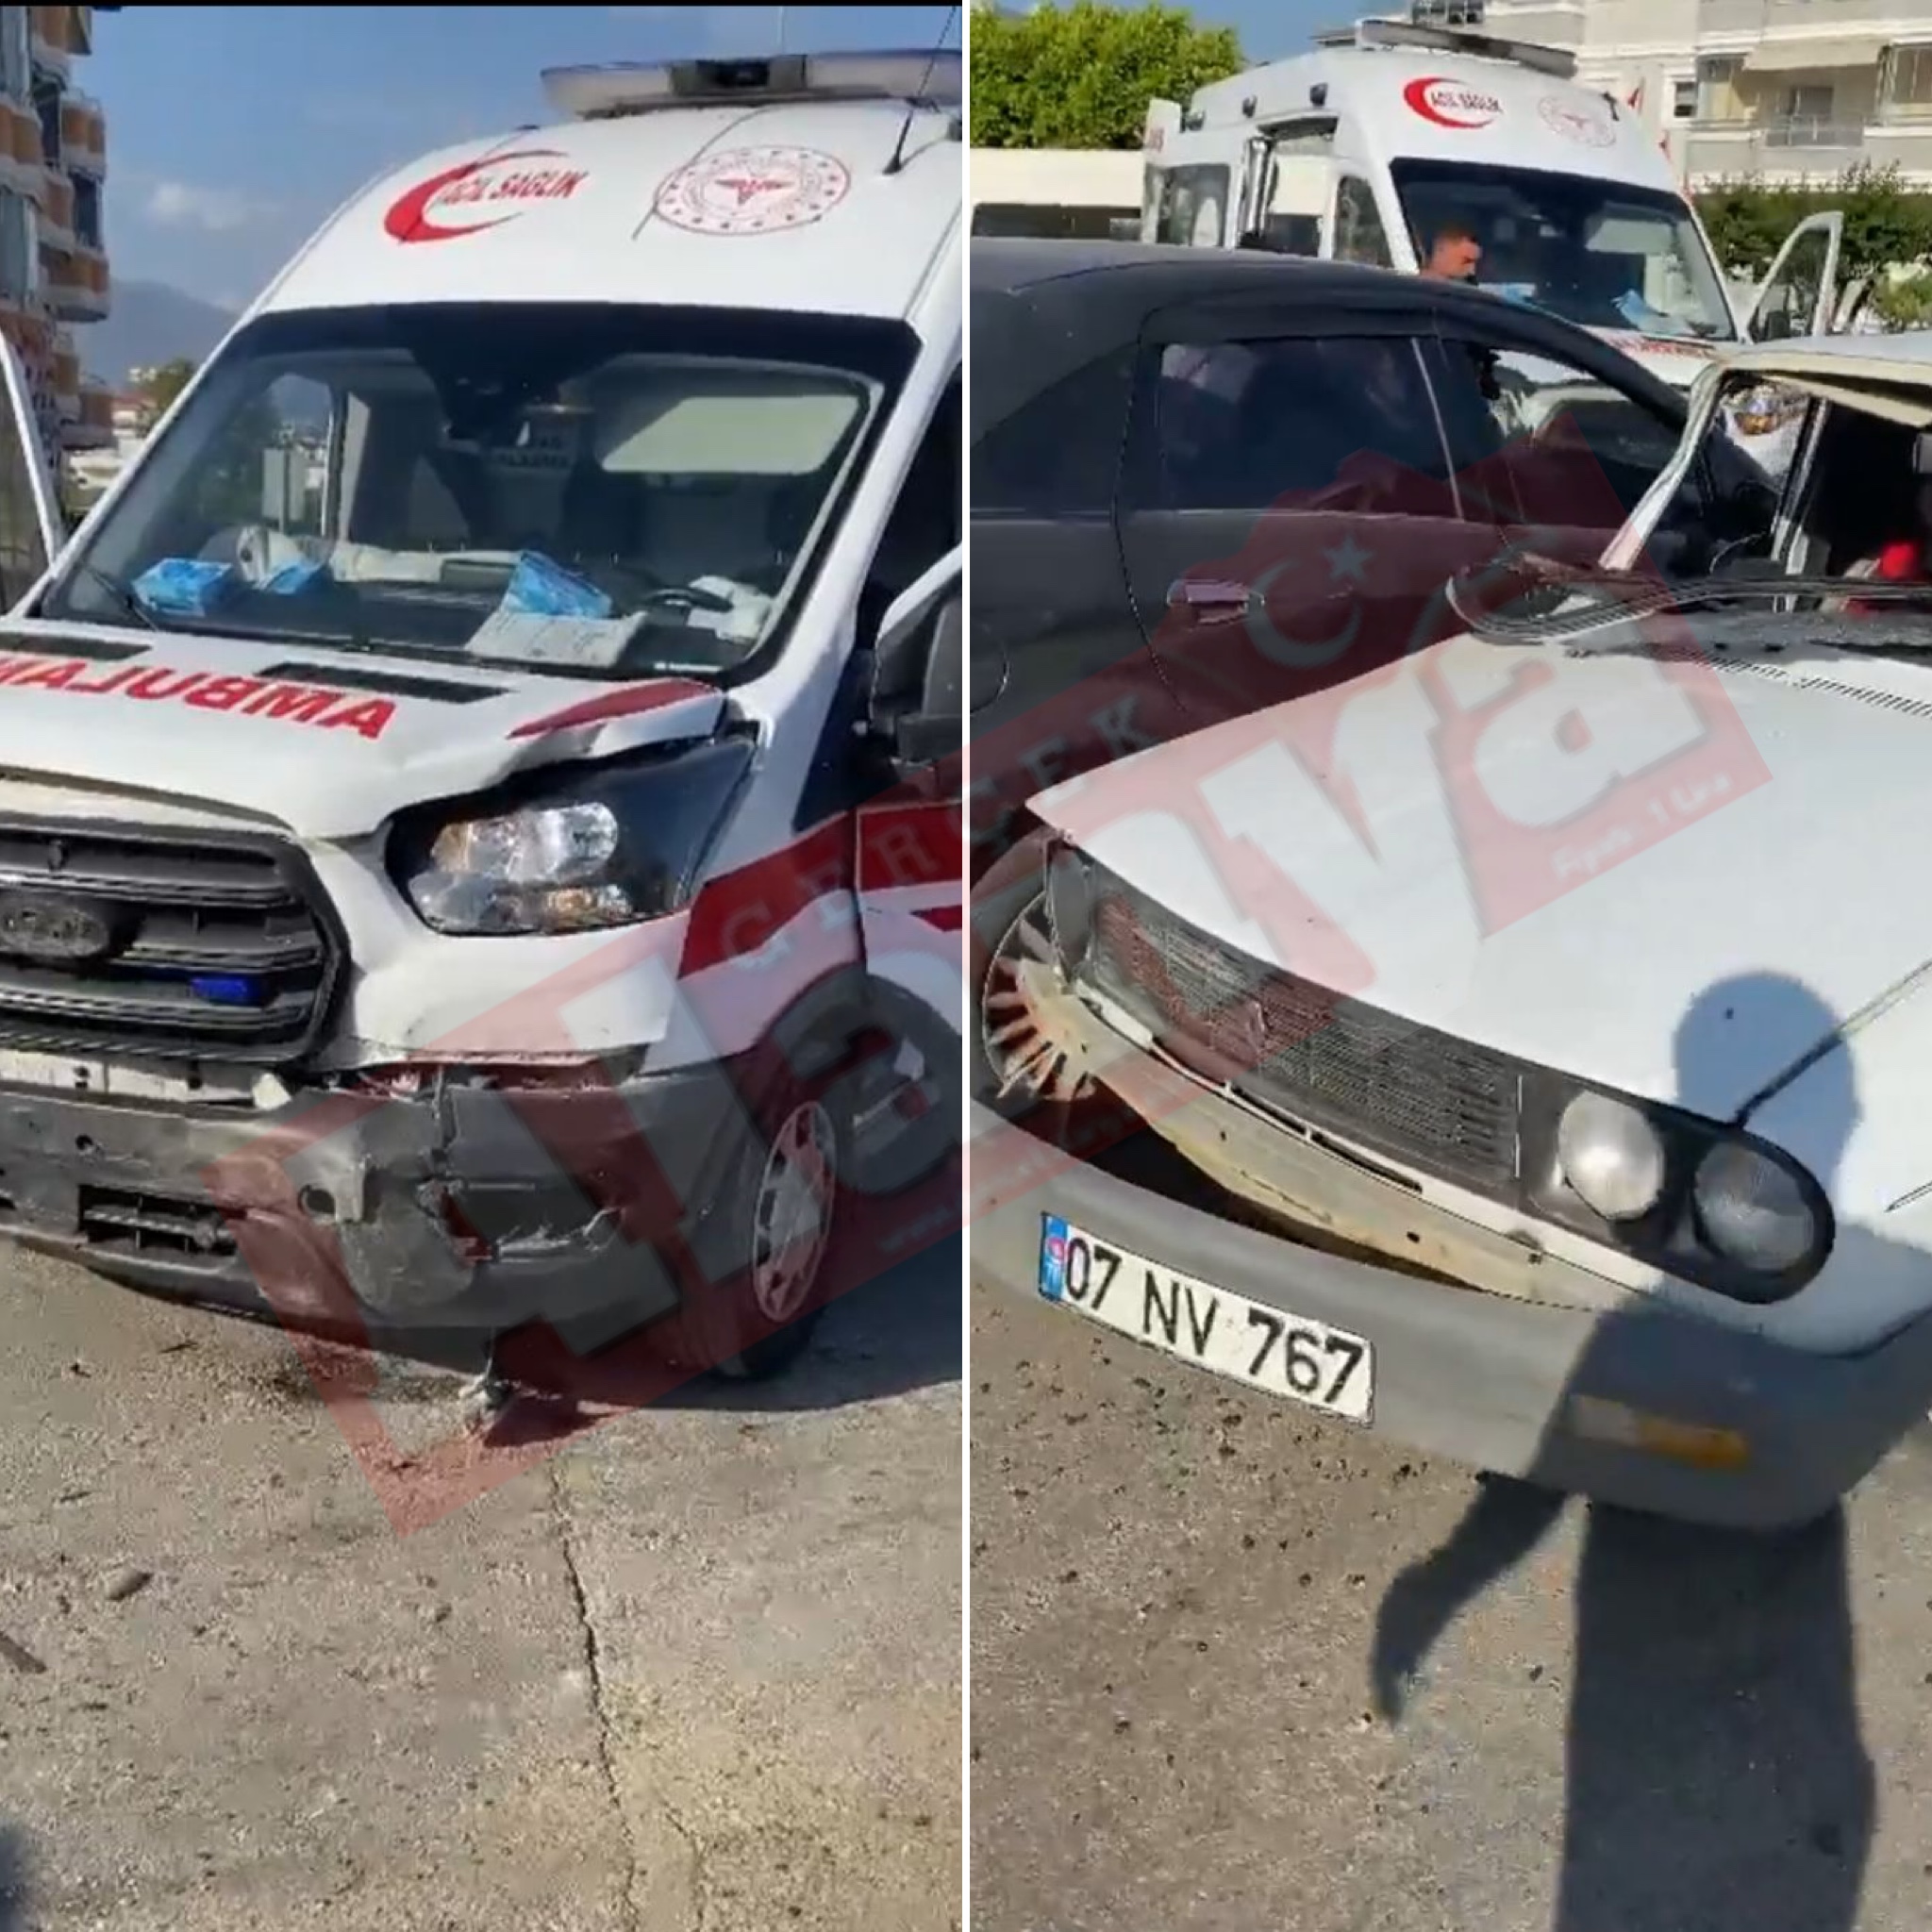 Alanya’da feci kaza: 4 yaralı